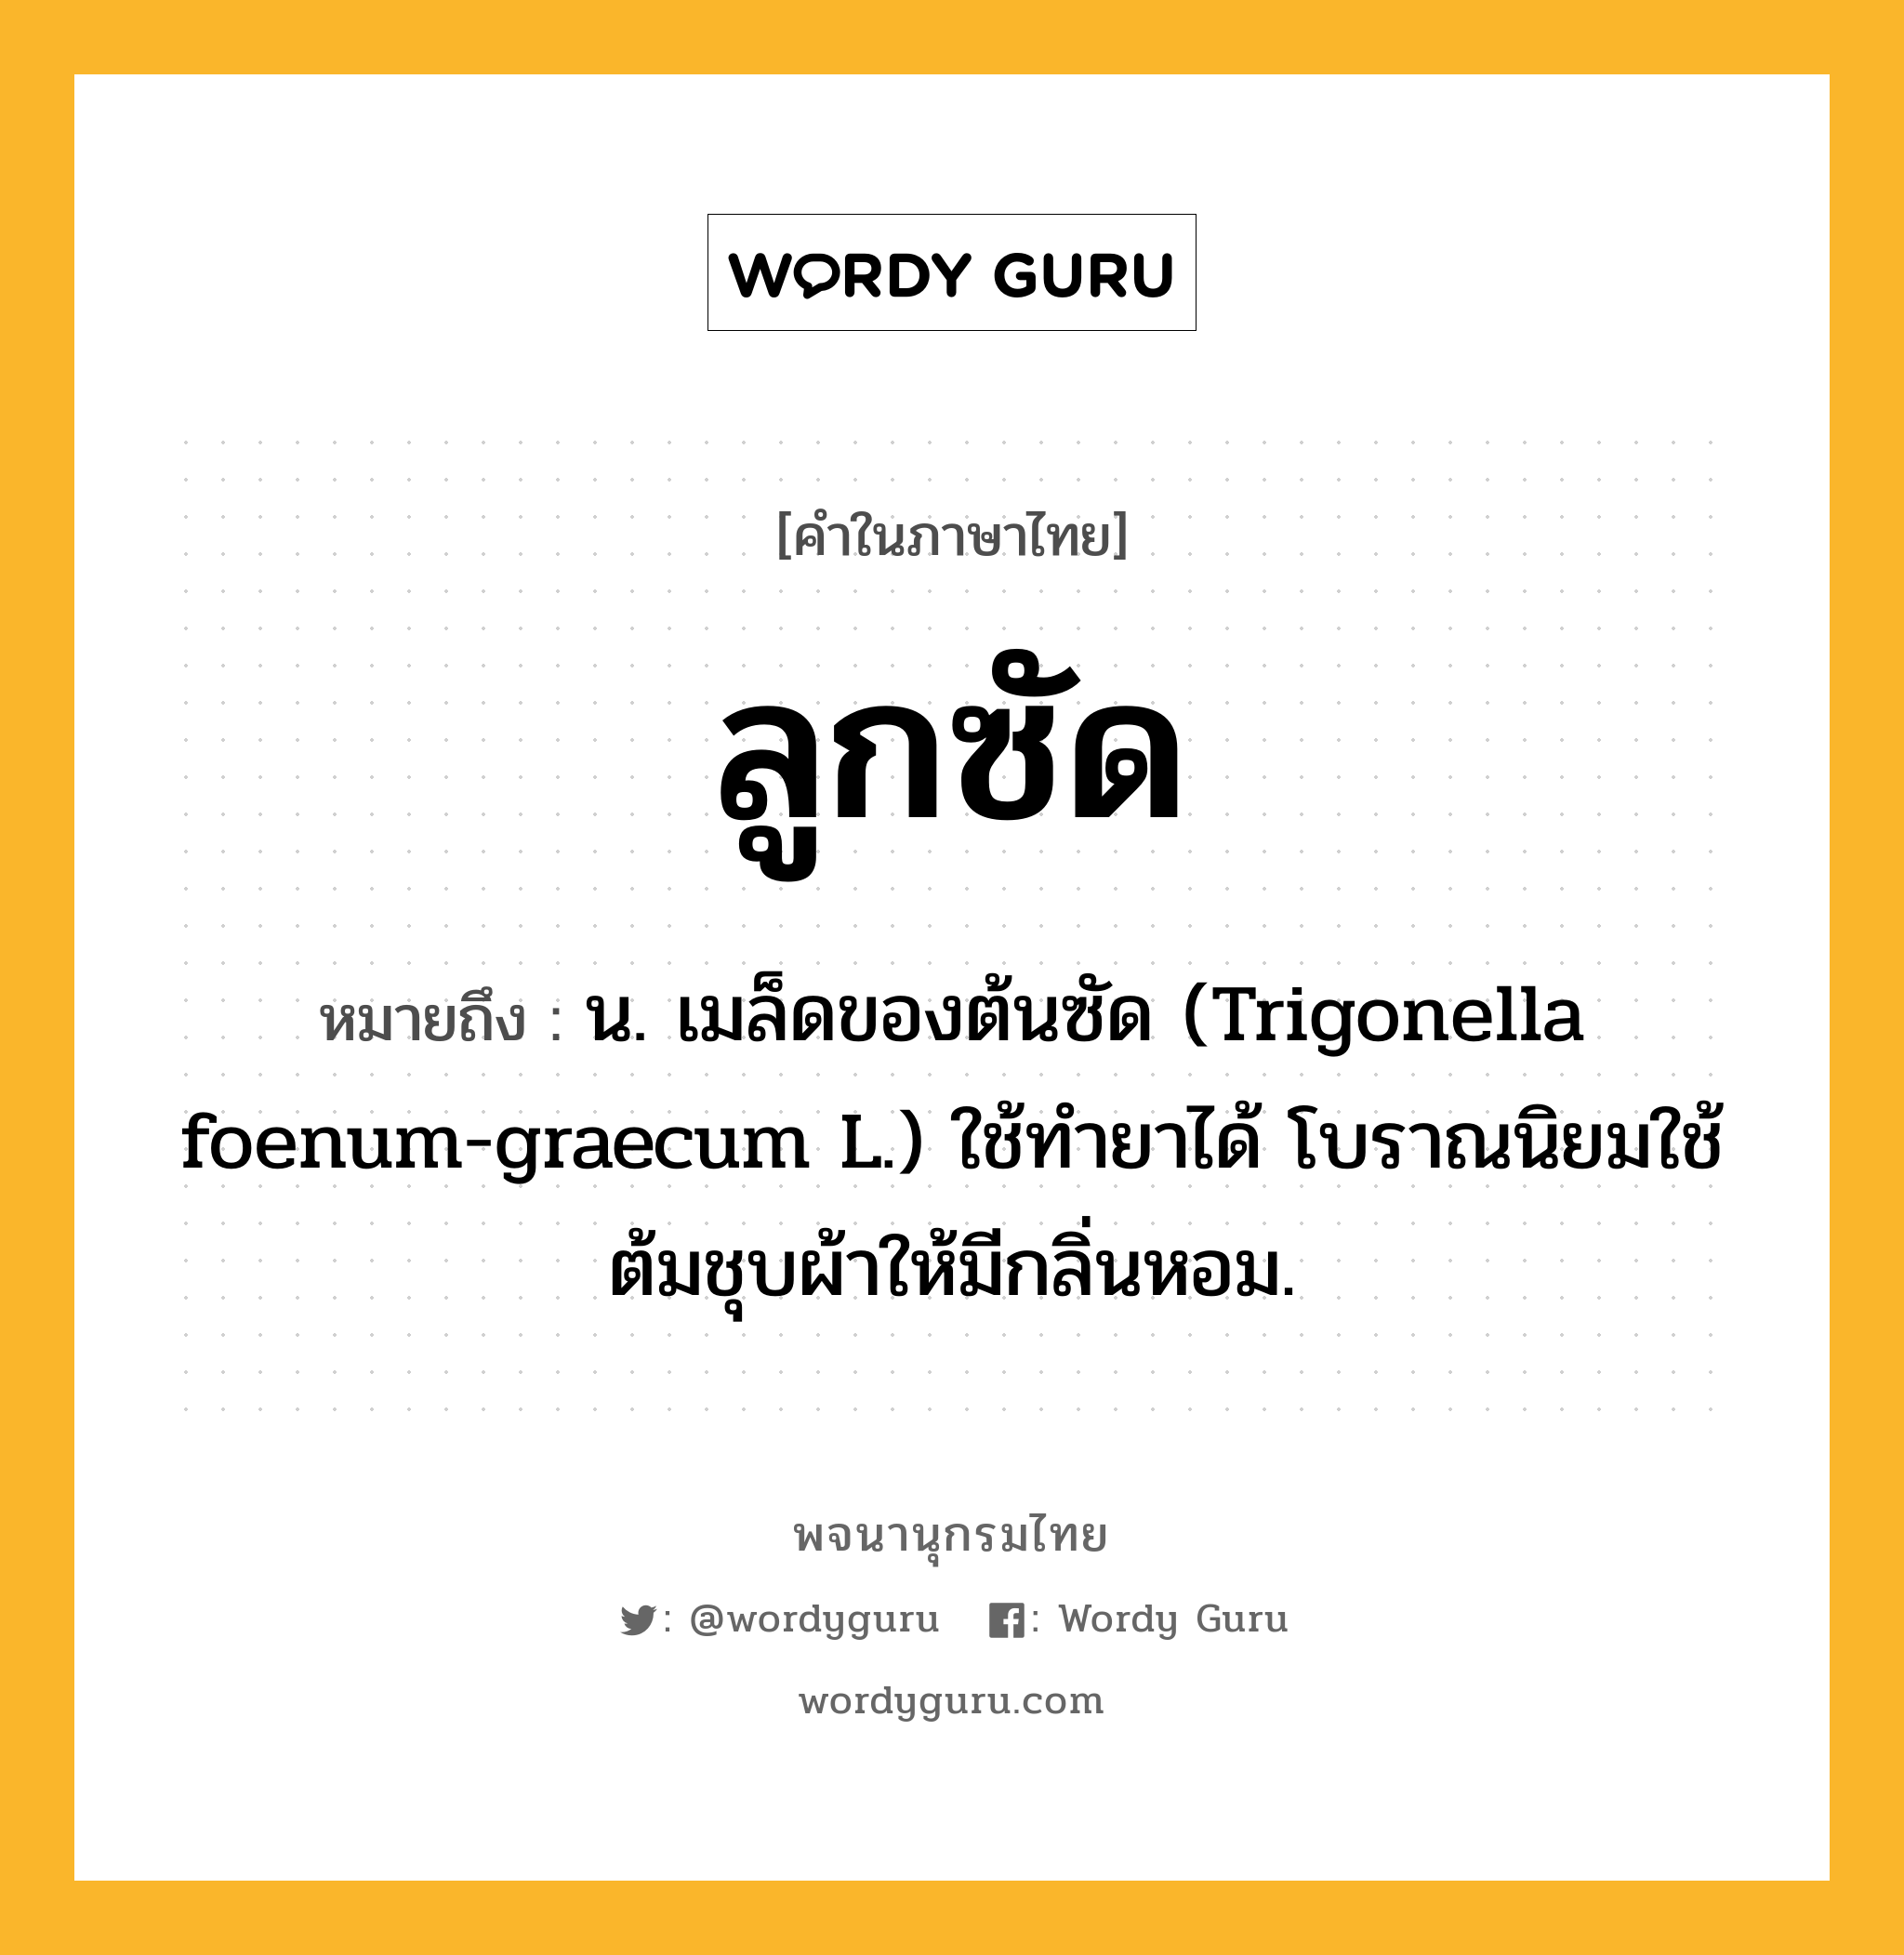 ลูกซัด หมายถึงอะไร?, คำในภาษาไทย ลูกซัด หมายถึง น. เมล็ดของต้นซัด (Trigonella foenum-graecum L.) ใช้ทำยาได้ โบราณนิยมใช้ต้มชุบผ้าให้มีกลิ่นหอม.